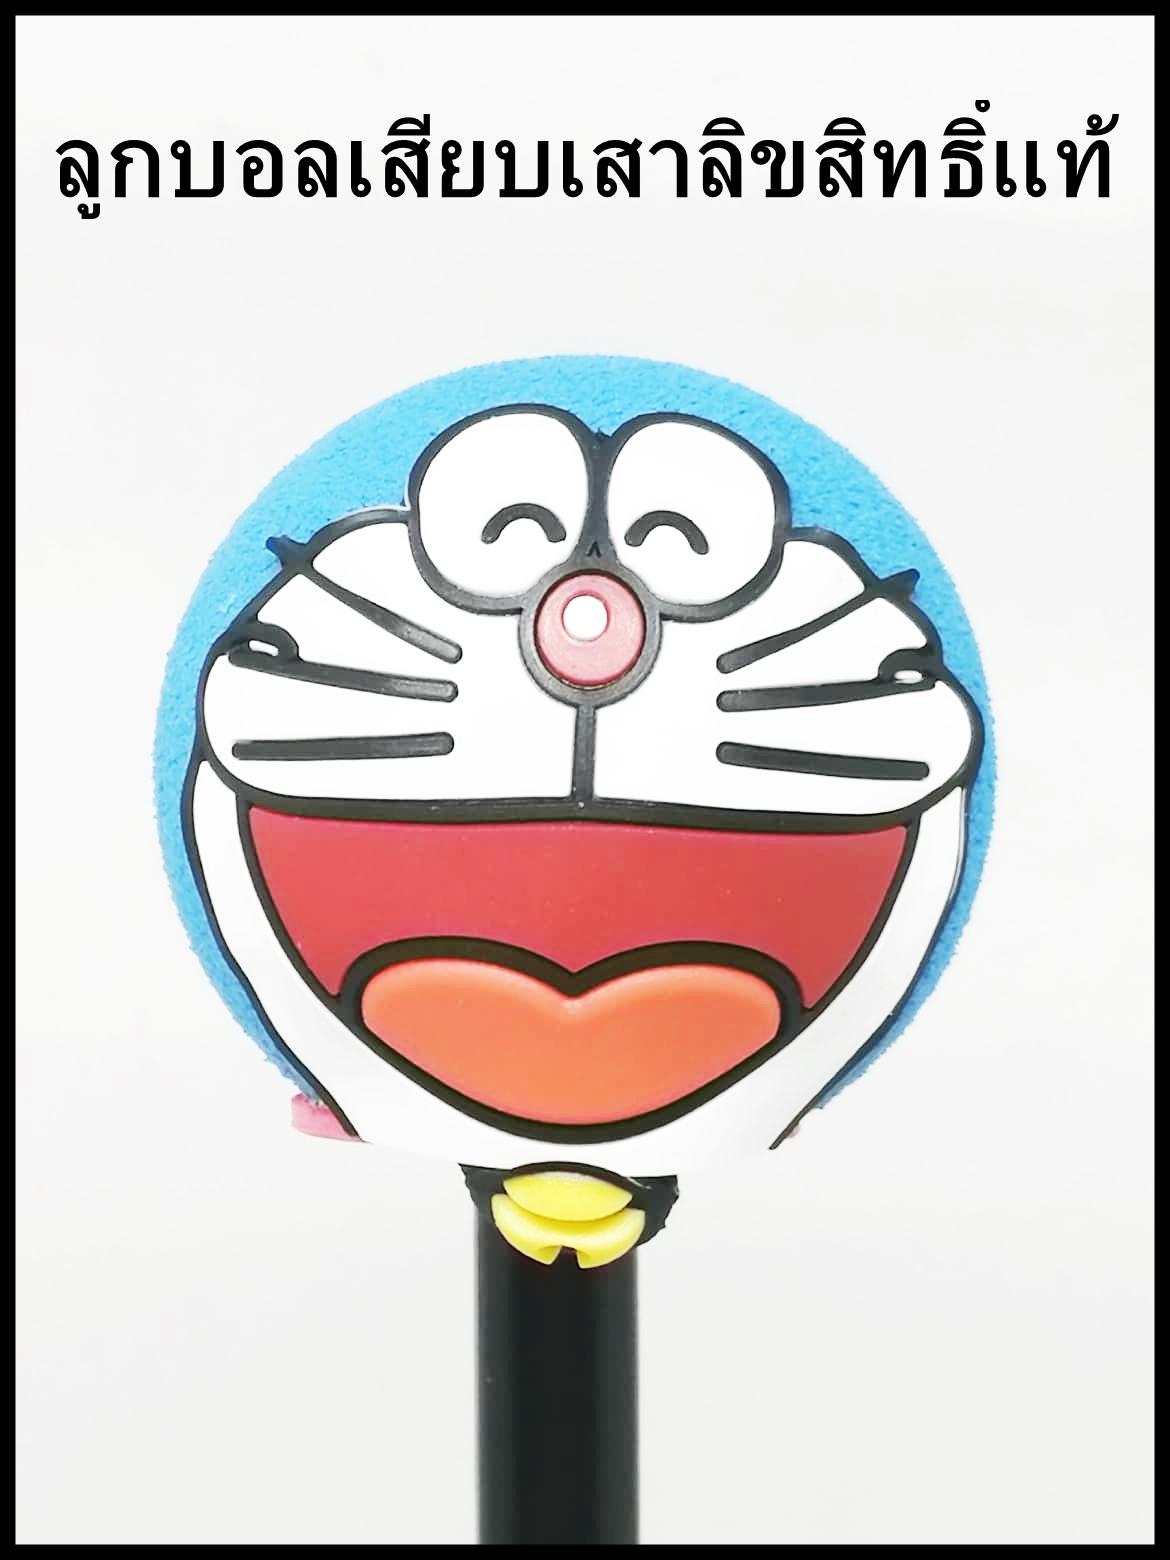 Doraemon ลูกบอลเสียบเสาอากาศรถยนต์ 1 ชิ้น ลิขสิทธิ์แท้ 100 %